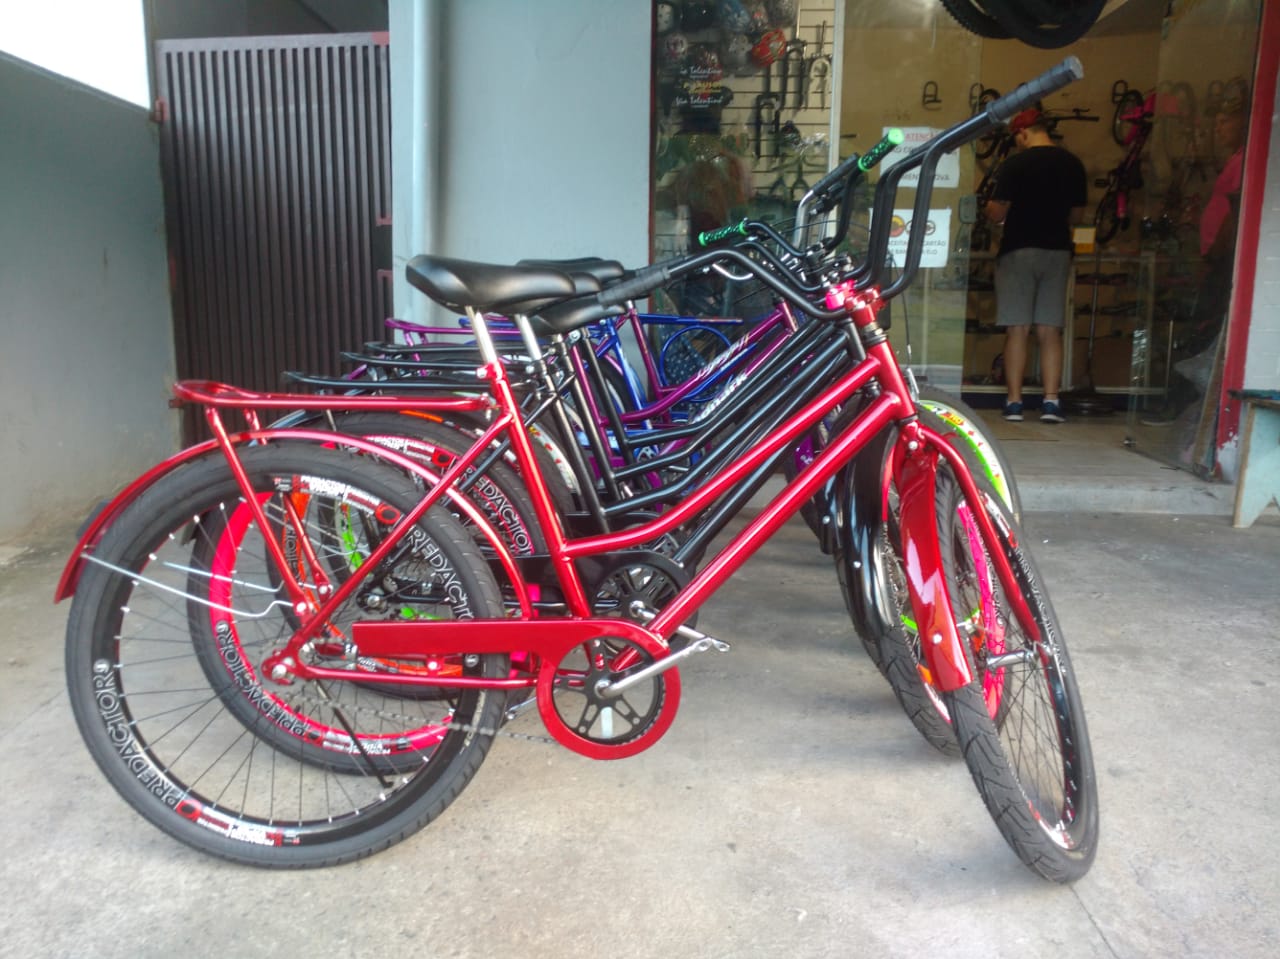 Muita gente lembrou das bicicletas nesta semana. Oficinas tiveram aumento no movimento | Foto Fábio Junkes/OCP